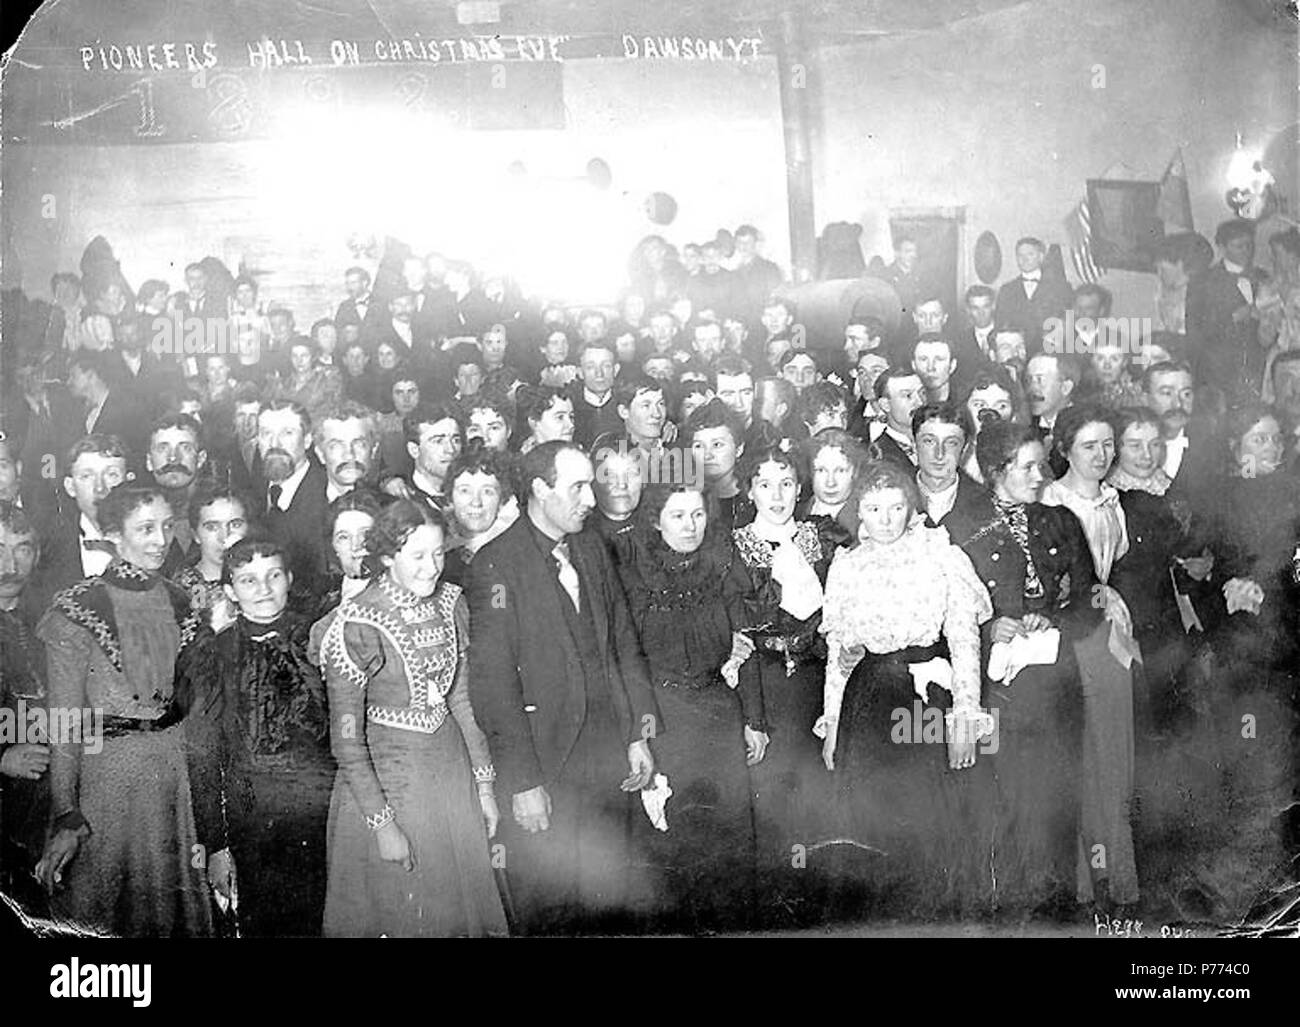 . Englisch: Männer und Frauen feiern Weihnachten im Pioneer Hall, Dawson City, Yukon Territory, Ca. 1899. Englisch: Legende zum Bild: 'Pioniere Halle am Heiligabend. DawsonY.T.' Themen (LCTGM): Weihnachten ------ Yukon Dawson; Urlaub ------ Yukon Dawson Themen (LCSH): Pioniere Halle (Dawson City, Yukon). ca. 1899 8 Männer und Frauen feiern Weihnachten im Pioneer Hall, Dawson City, Yukon Territory, ca 1899 HEGG (81) Stockfoto